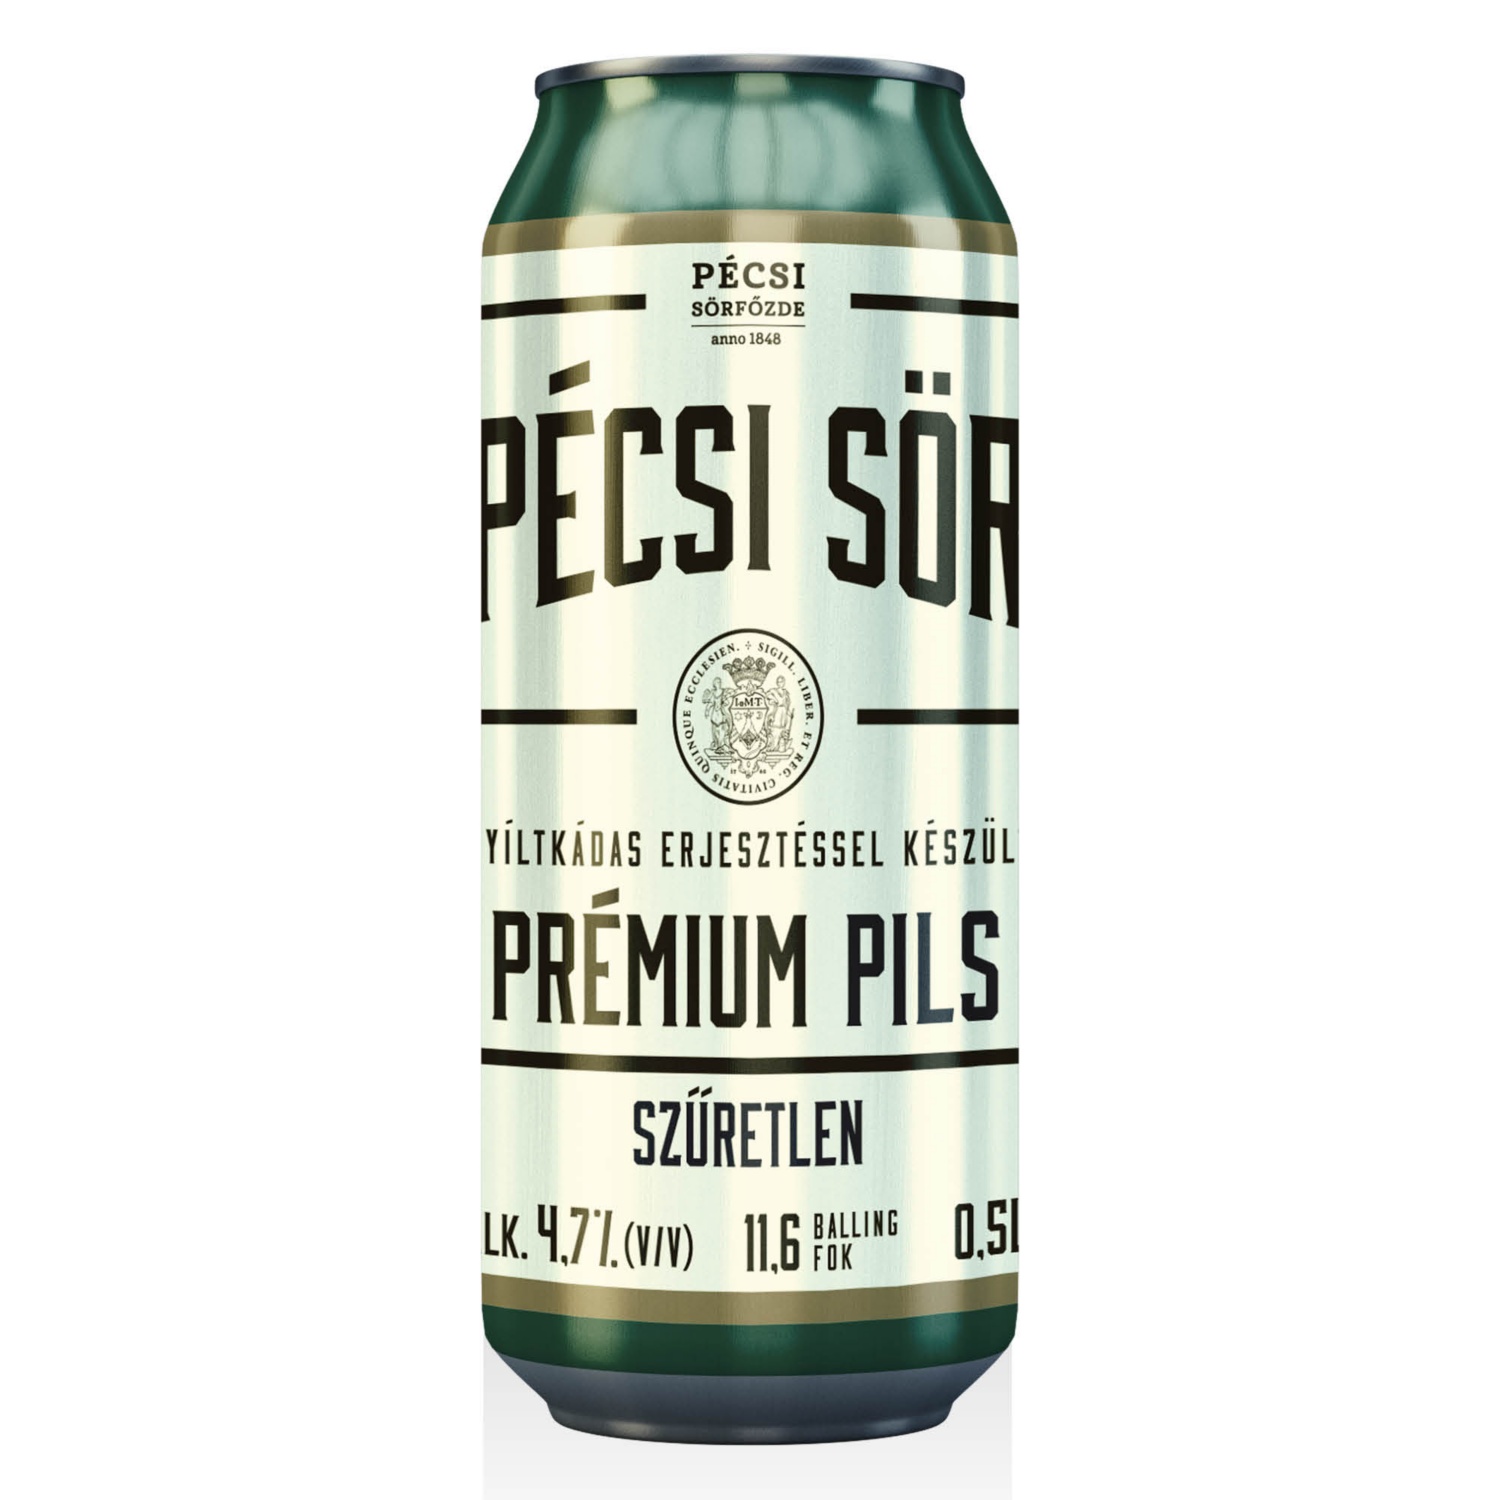 PÉCSI Prémium világos sör, 0,5 l, szűretlen pils